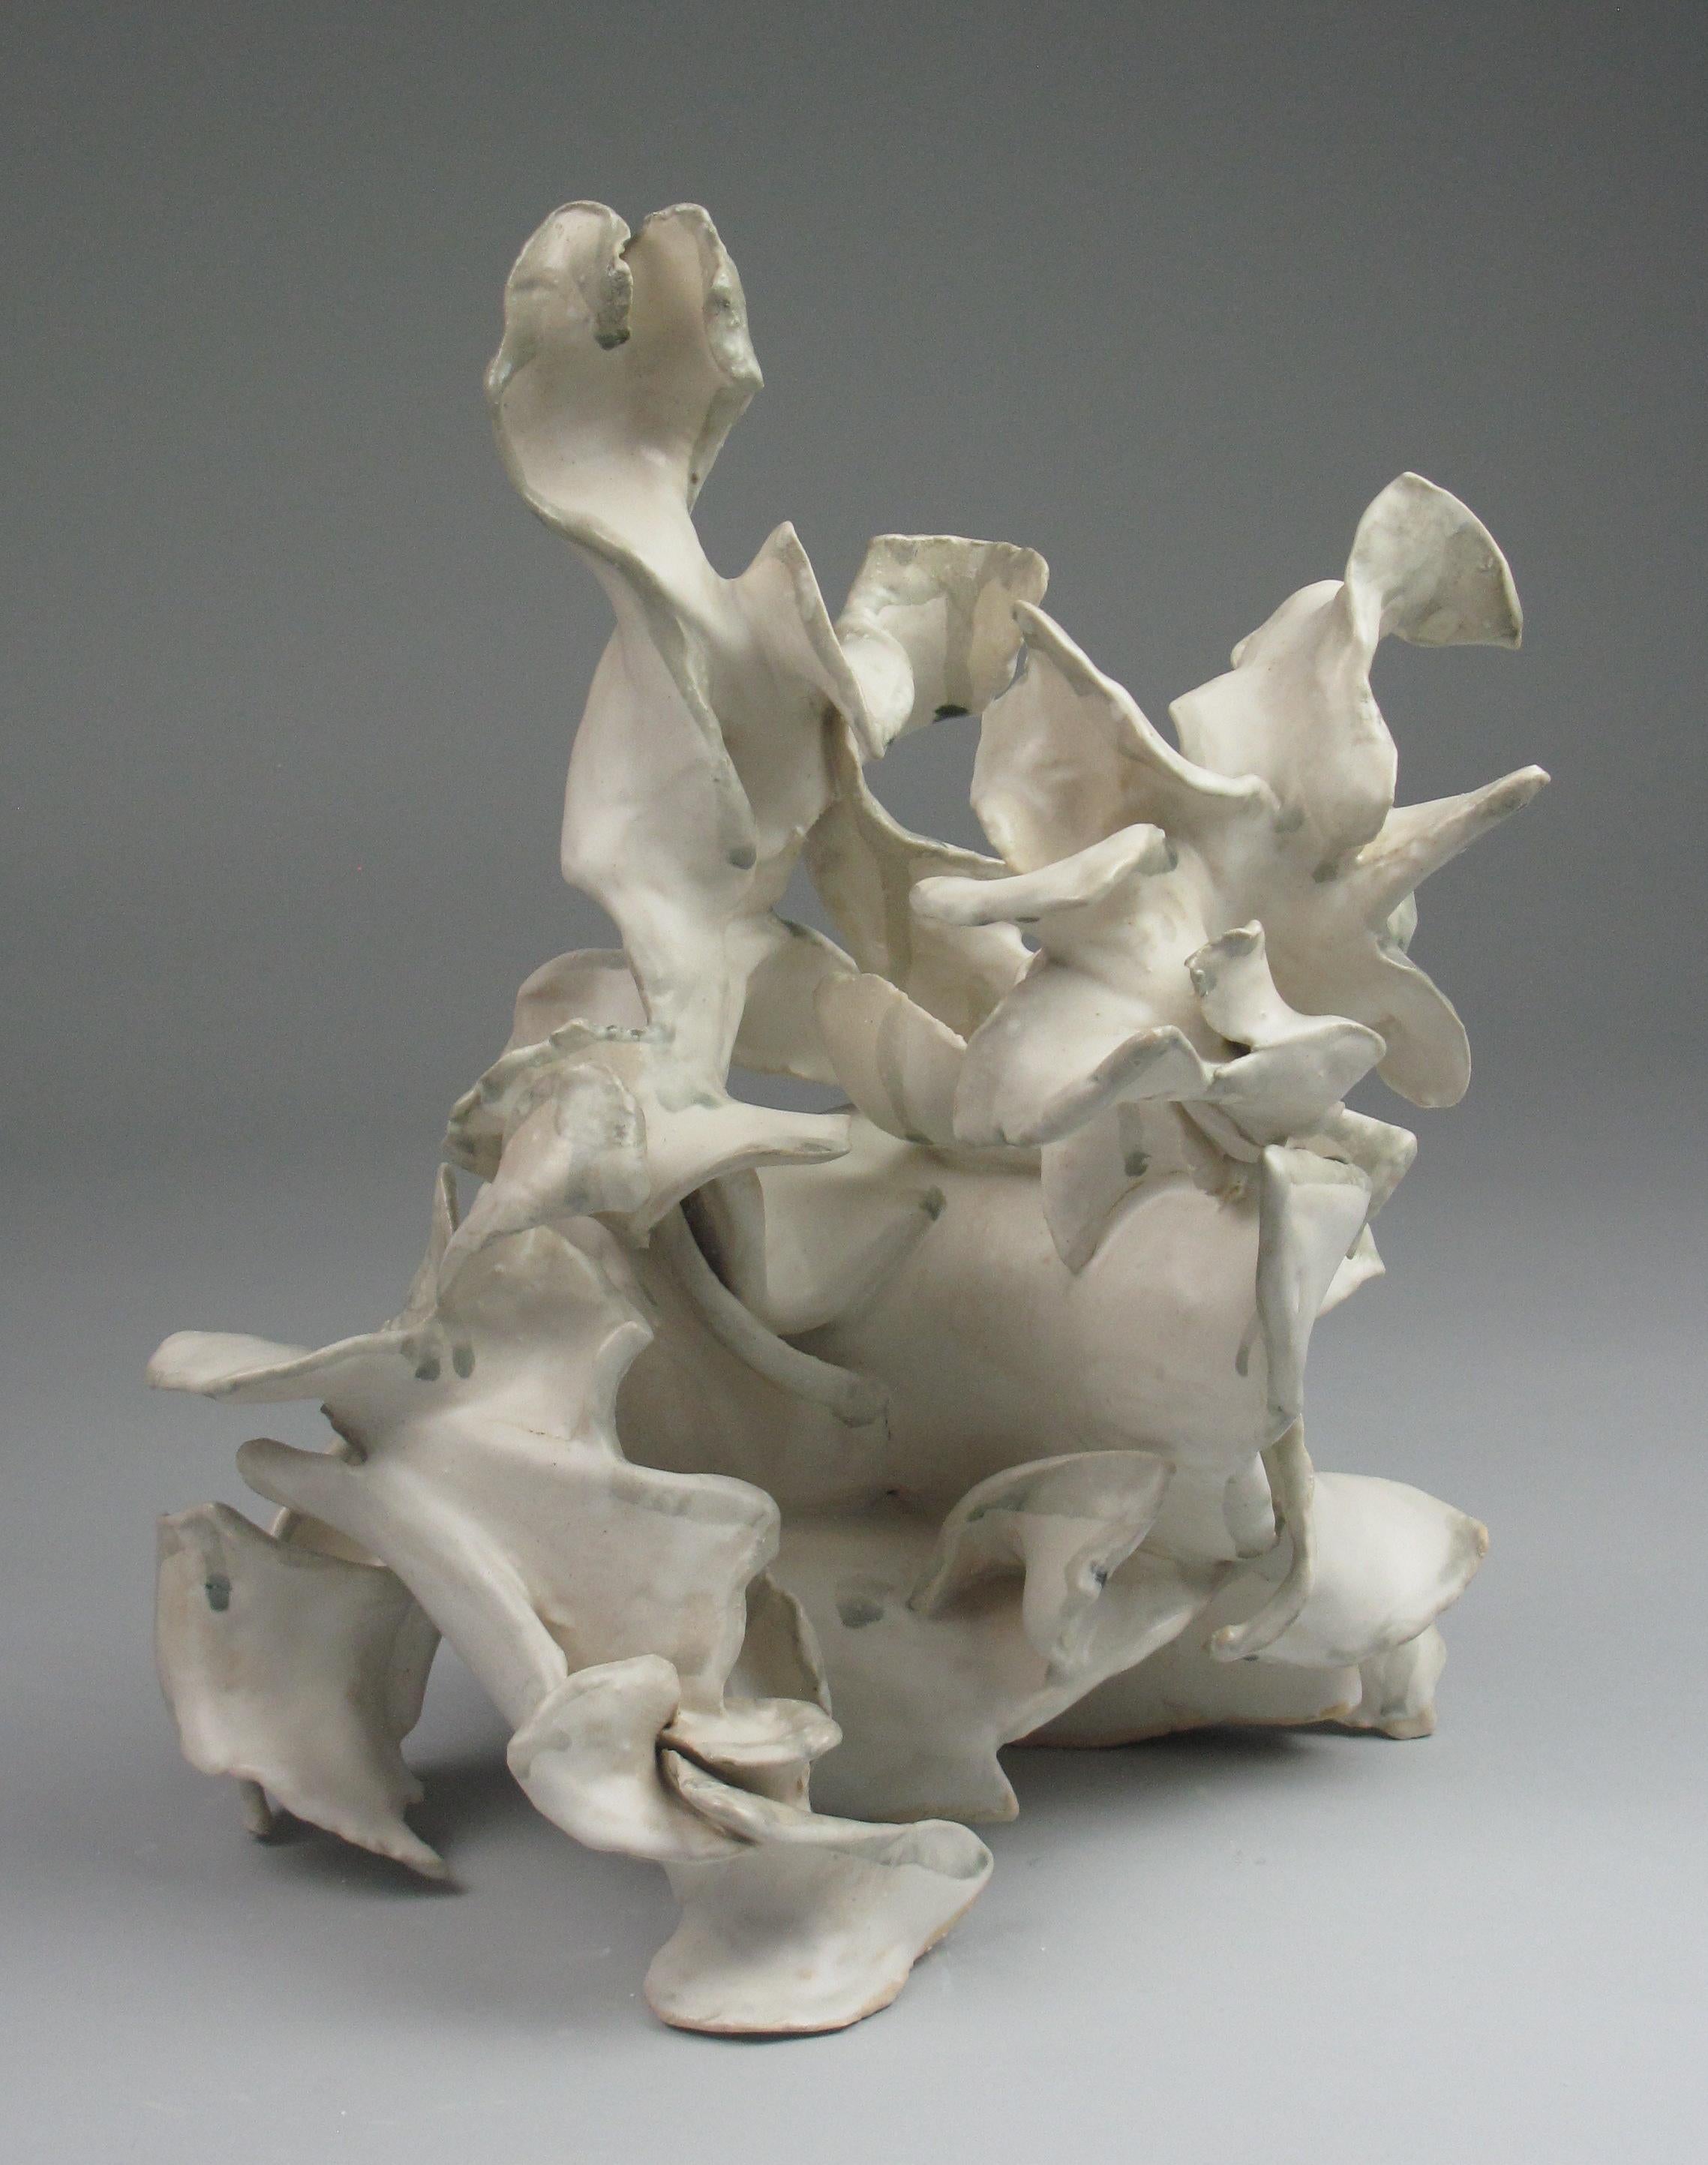 "Heap", gestural, ceramic, sculpture, white, cream, grey, teal, stoneware